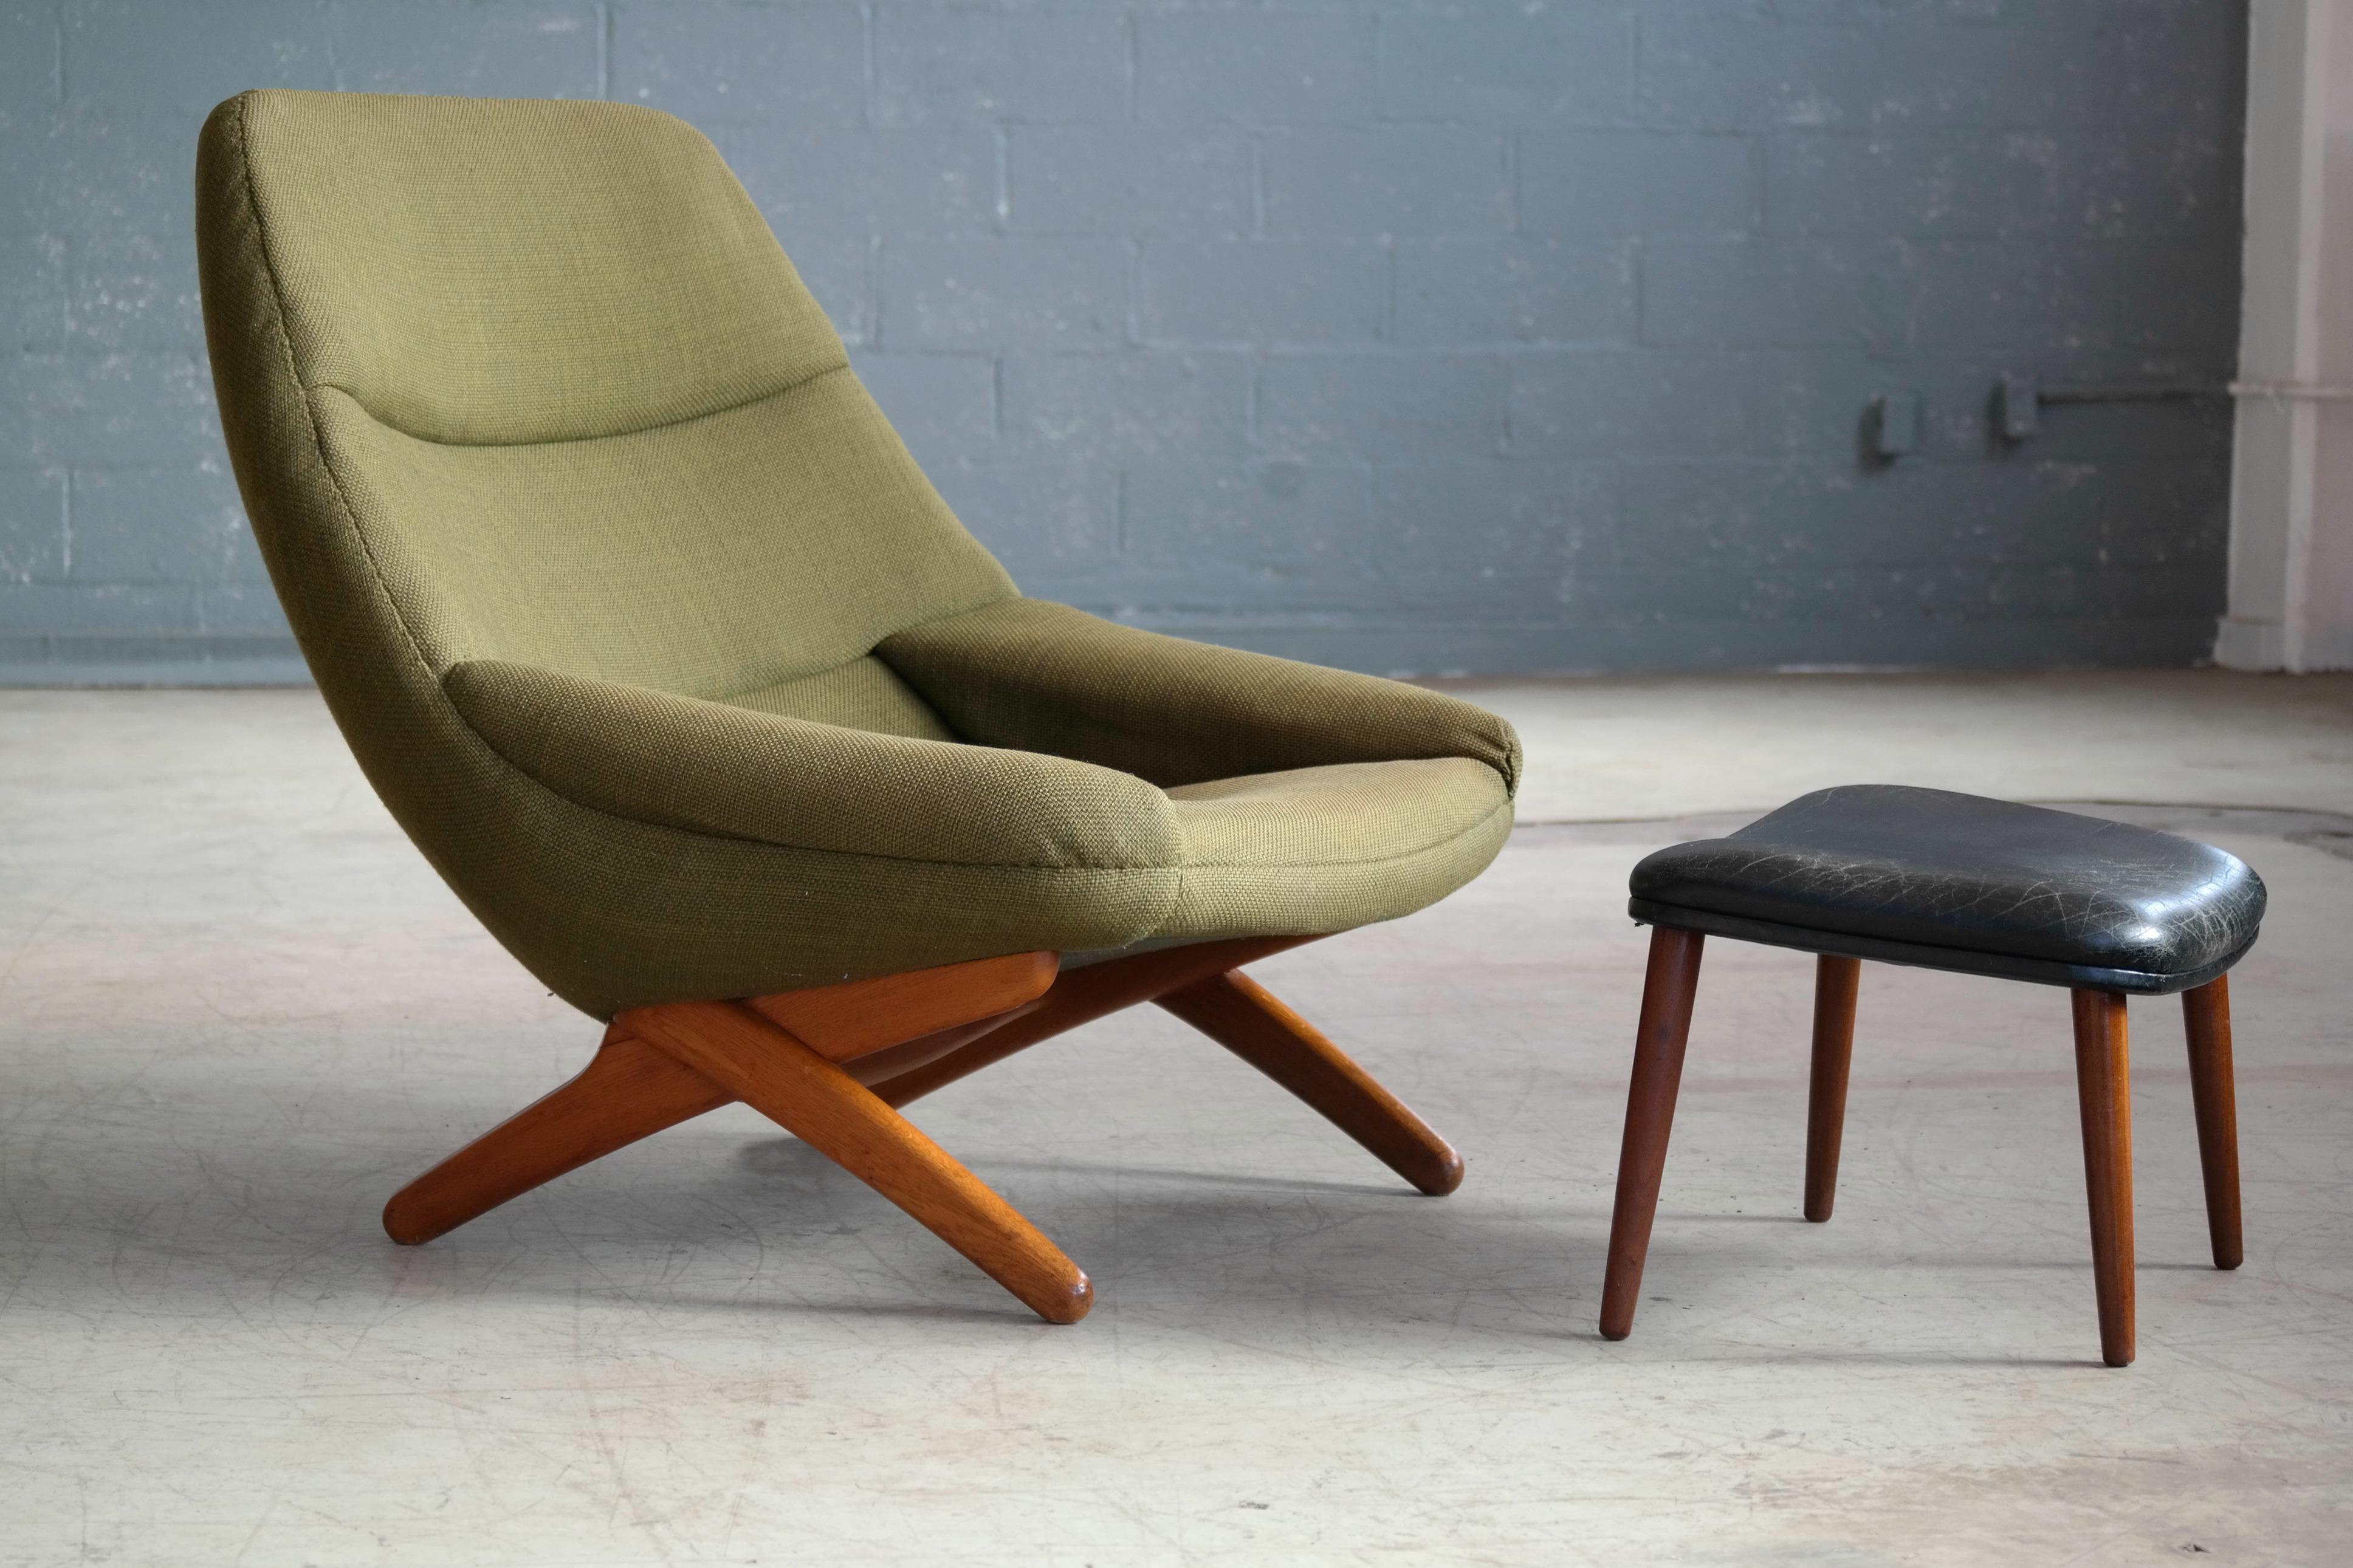 Seltener:: von Illum Wikkelso entworfener Sessel Modell ML91 mit Ottomane:: hergestellt von A. Mikael Laursen um 1960 in Dänemark. Der ML91 mit seinem Scherengestell aus massiver Eiche ist einer der markantesten Entwürfe der dänischen Moderne und